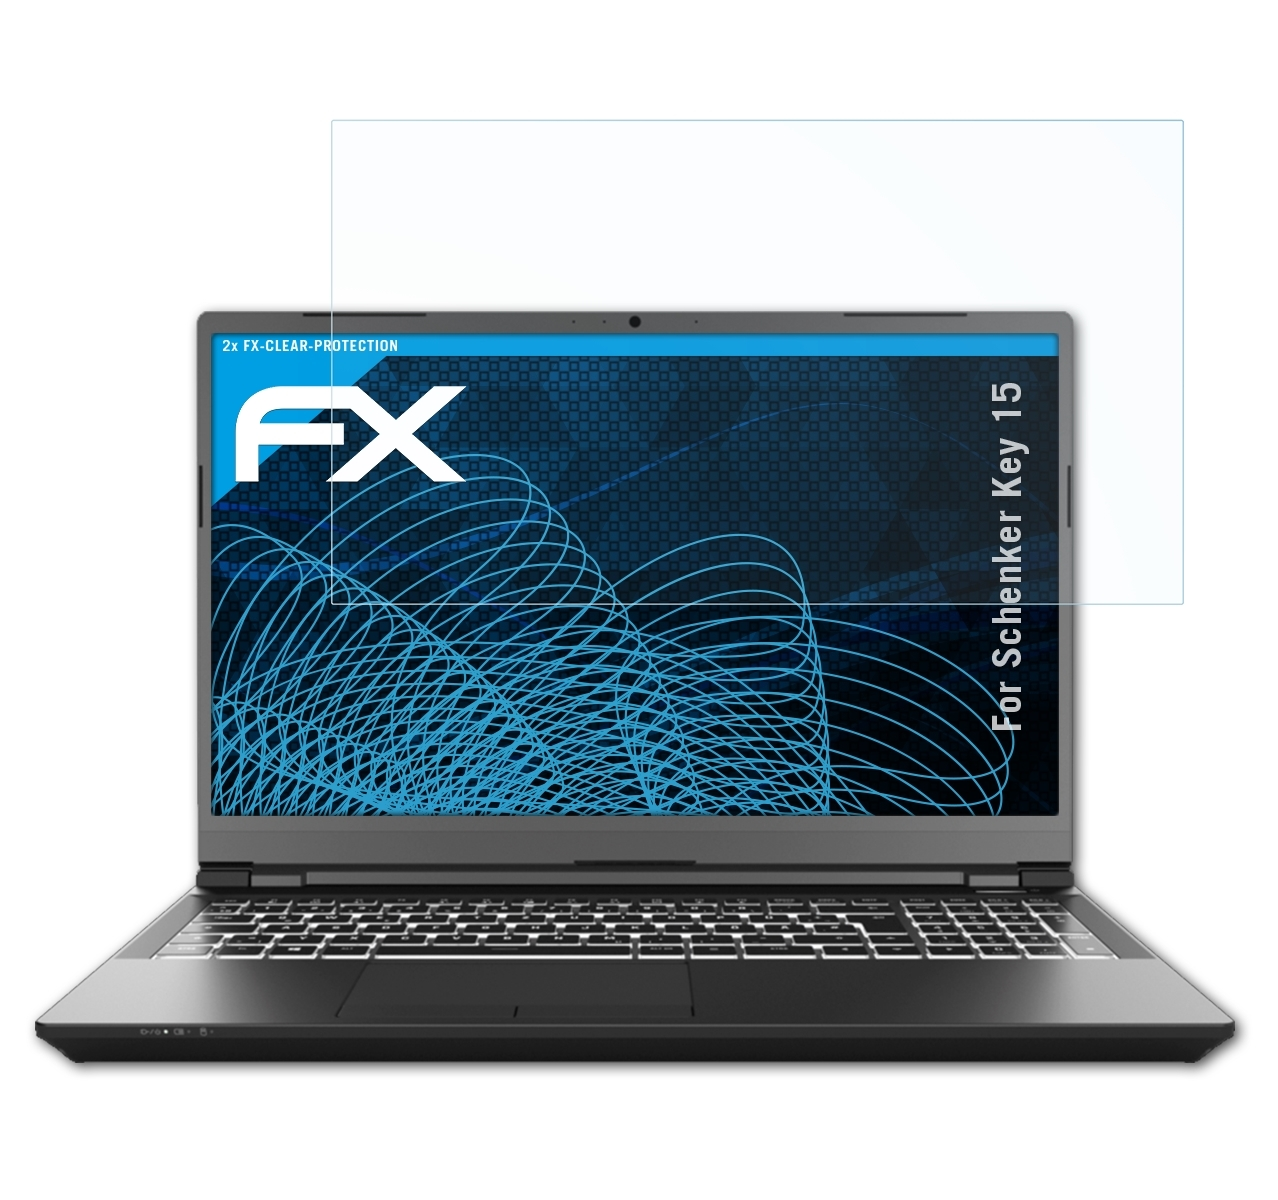 2x ATFOLIX Schenker Key 15) FX-Clear Displayschutz(für